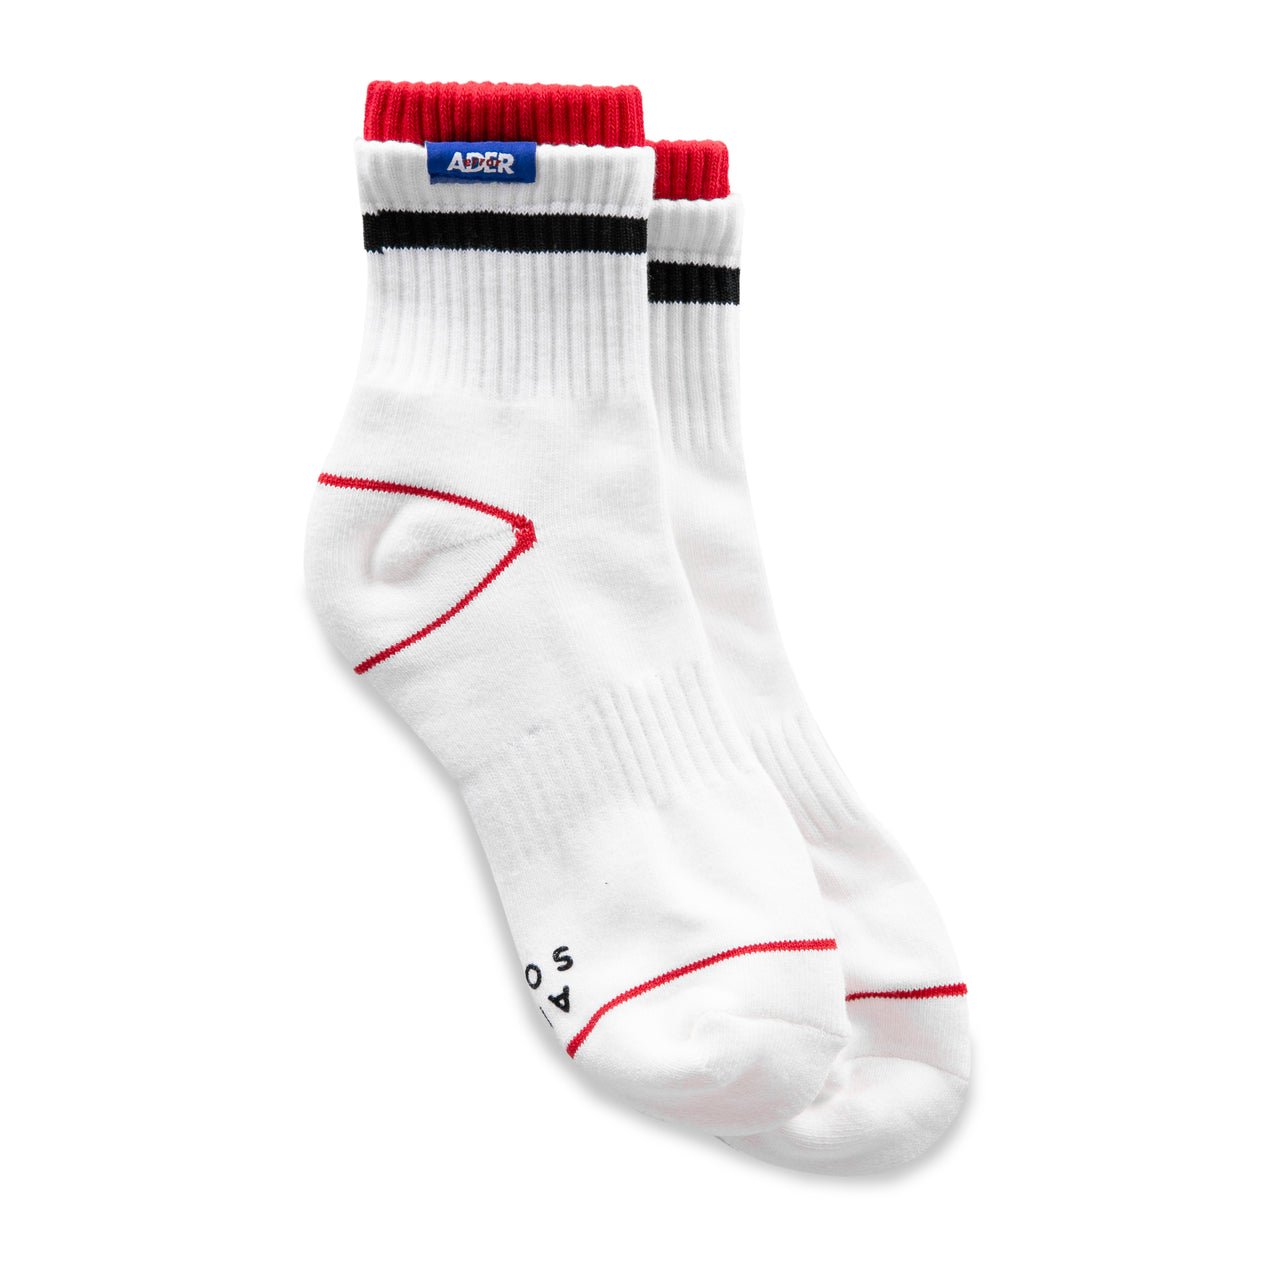 Adererror Clip Socks - White